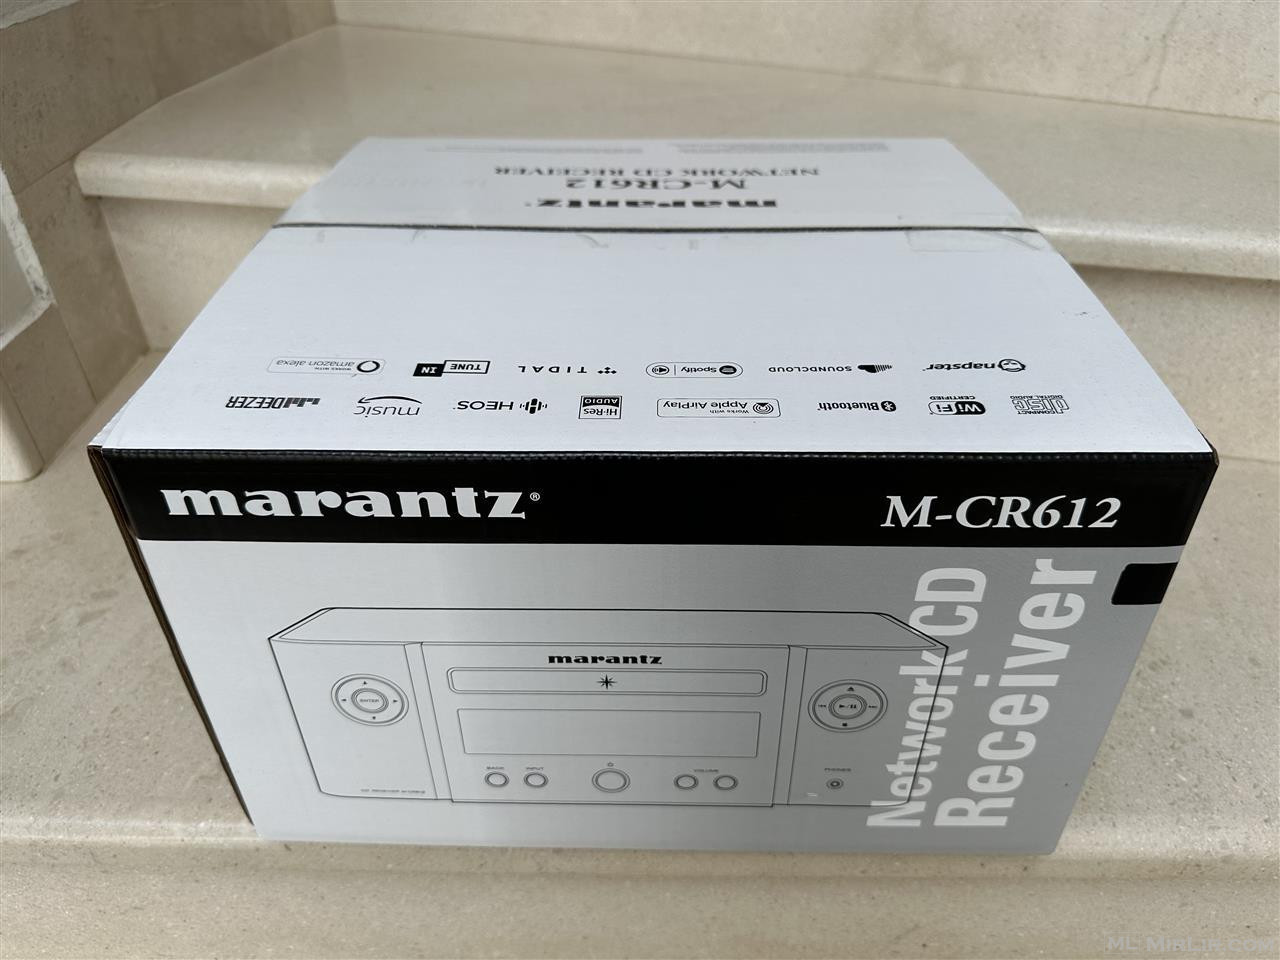 Marantz M-CR612 Sistemi me i ri dhe me i mire